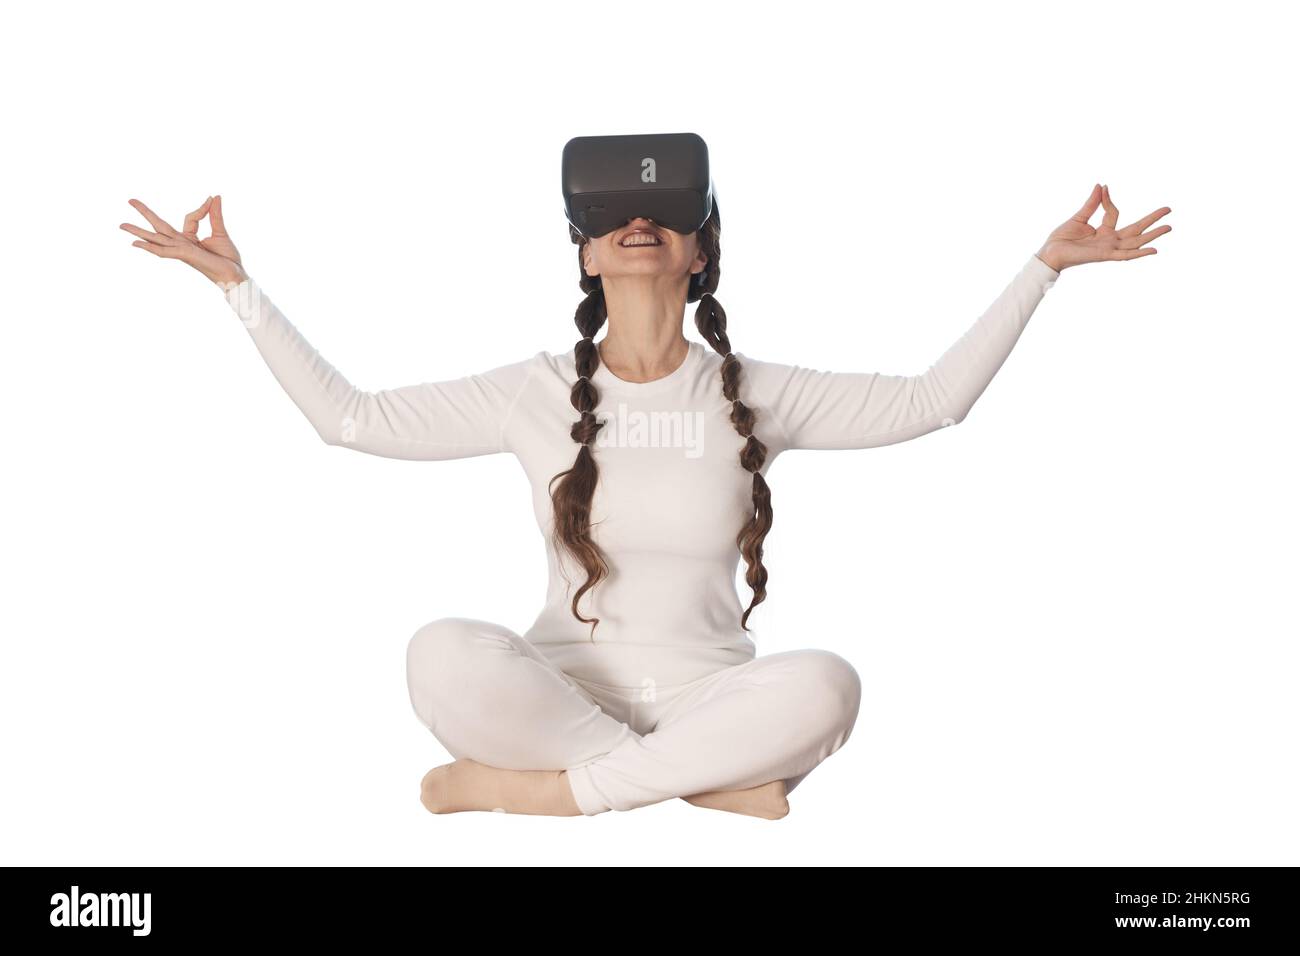 Une femme fait du yoga avec des lunettes de réalité virtuelle.Elle prend diverses poses de yoga et des sourires. Banque D'Images